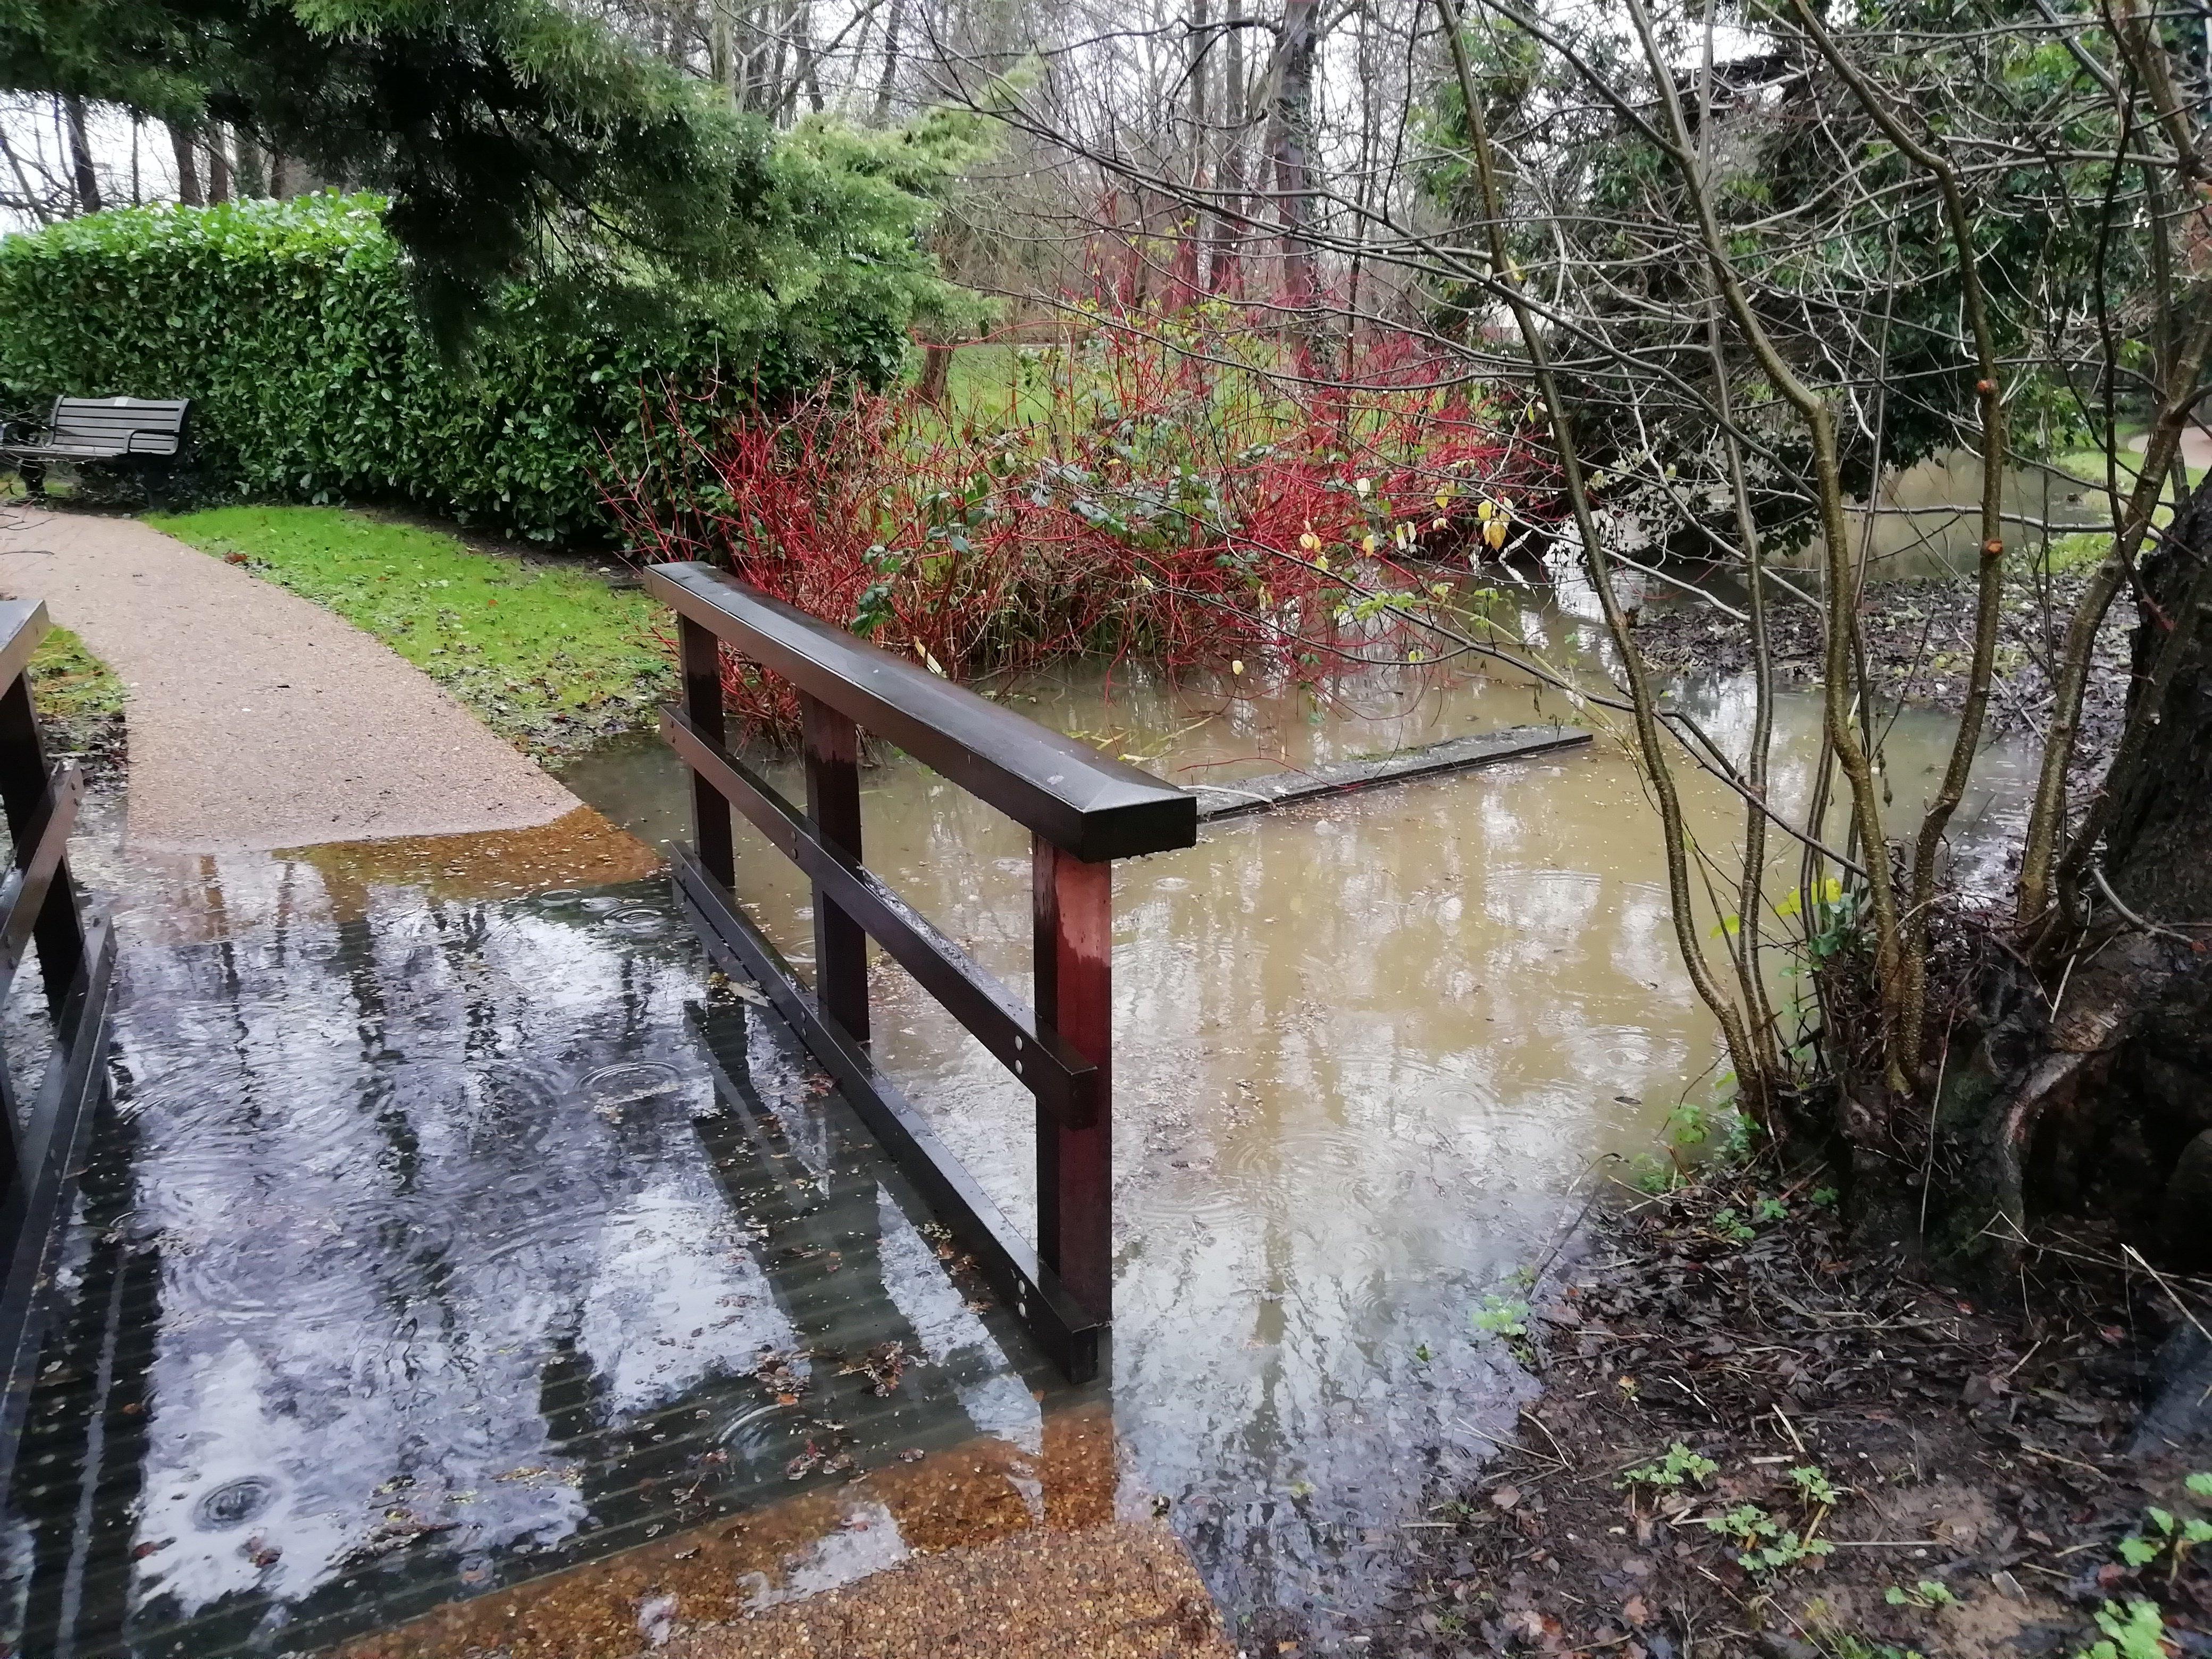 The Memorial Gardens footbridge is flooded